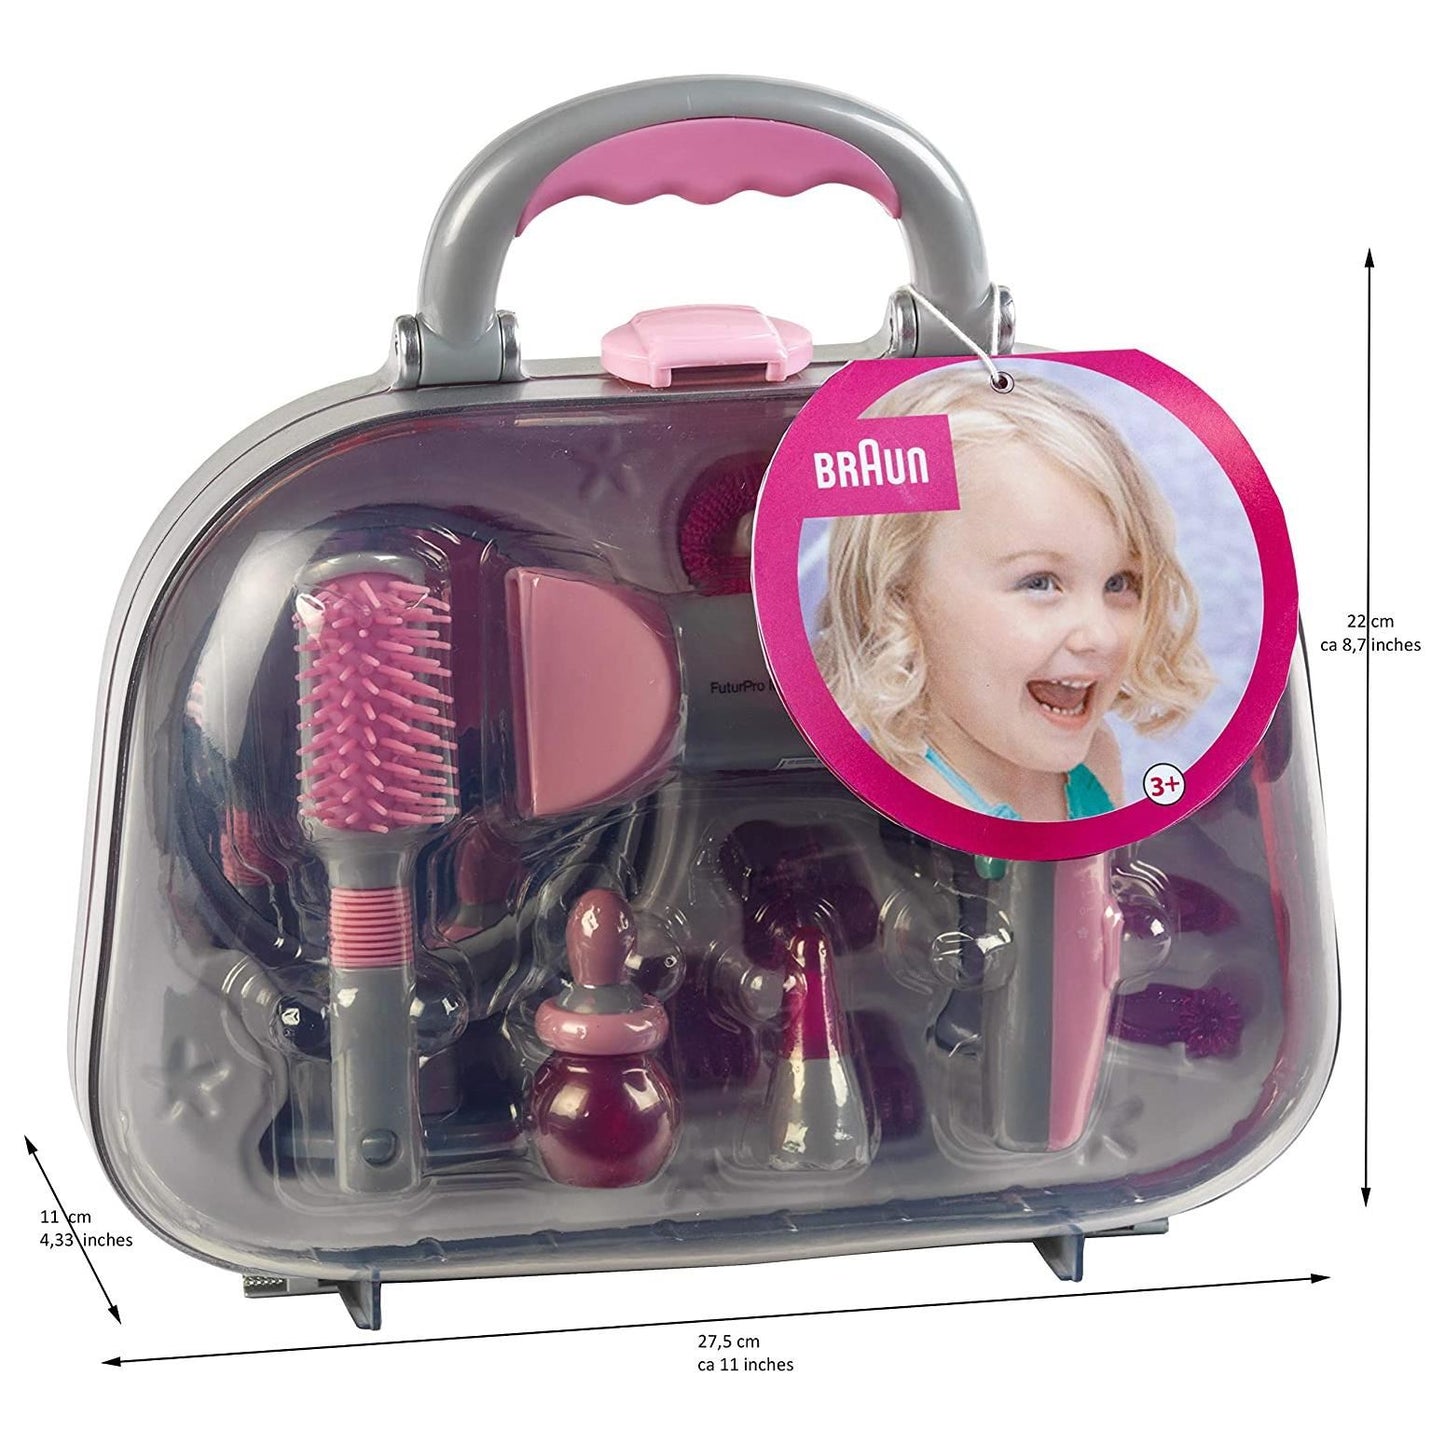 Toy Braun Hairstyling Case with Braun Hairdryer